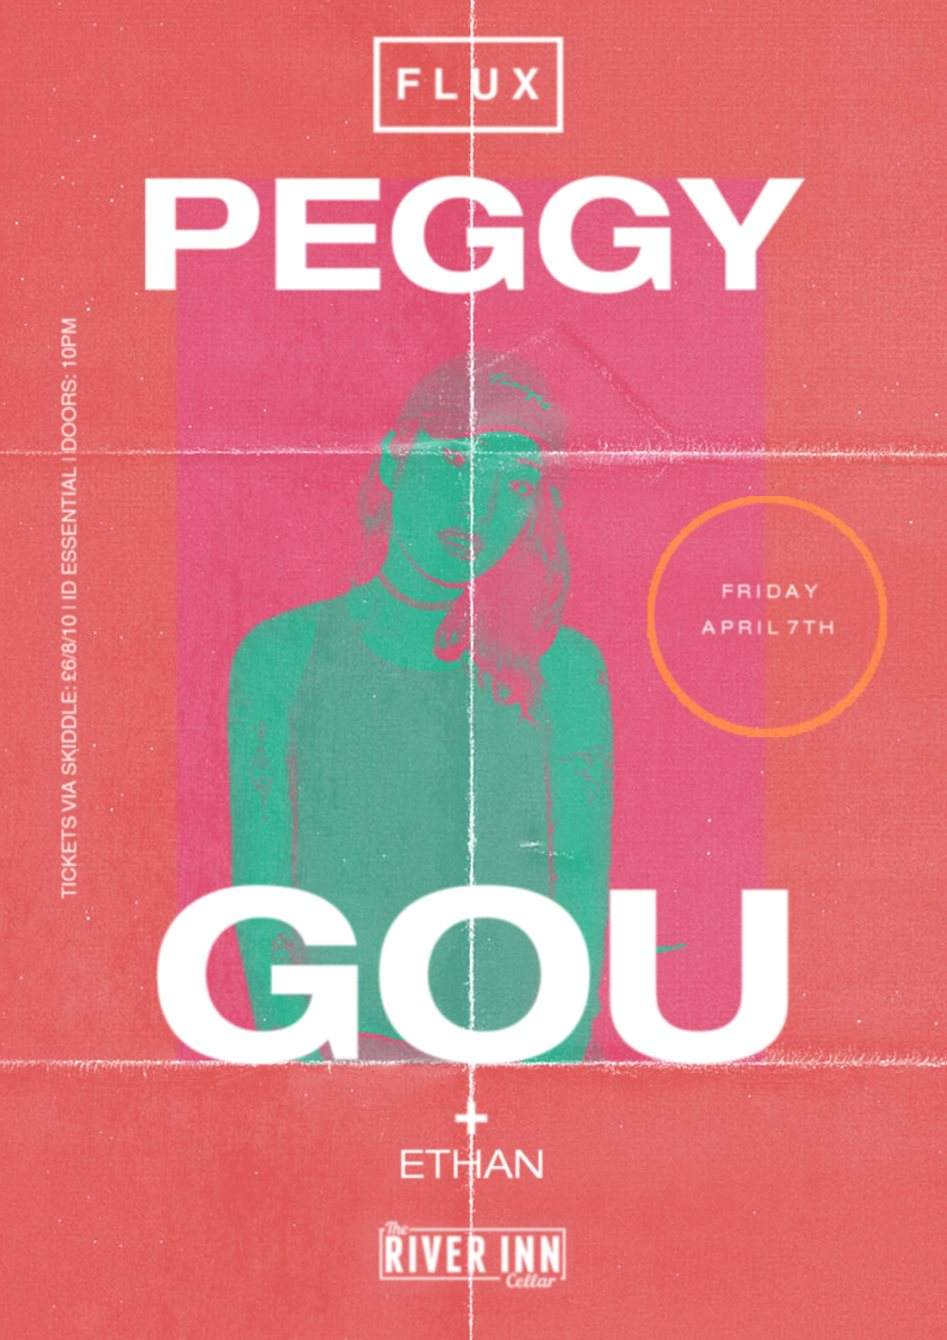 Flux Derry presents Peggy Gou - フライヤー表